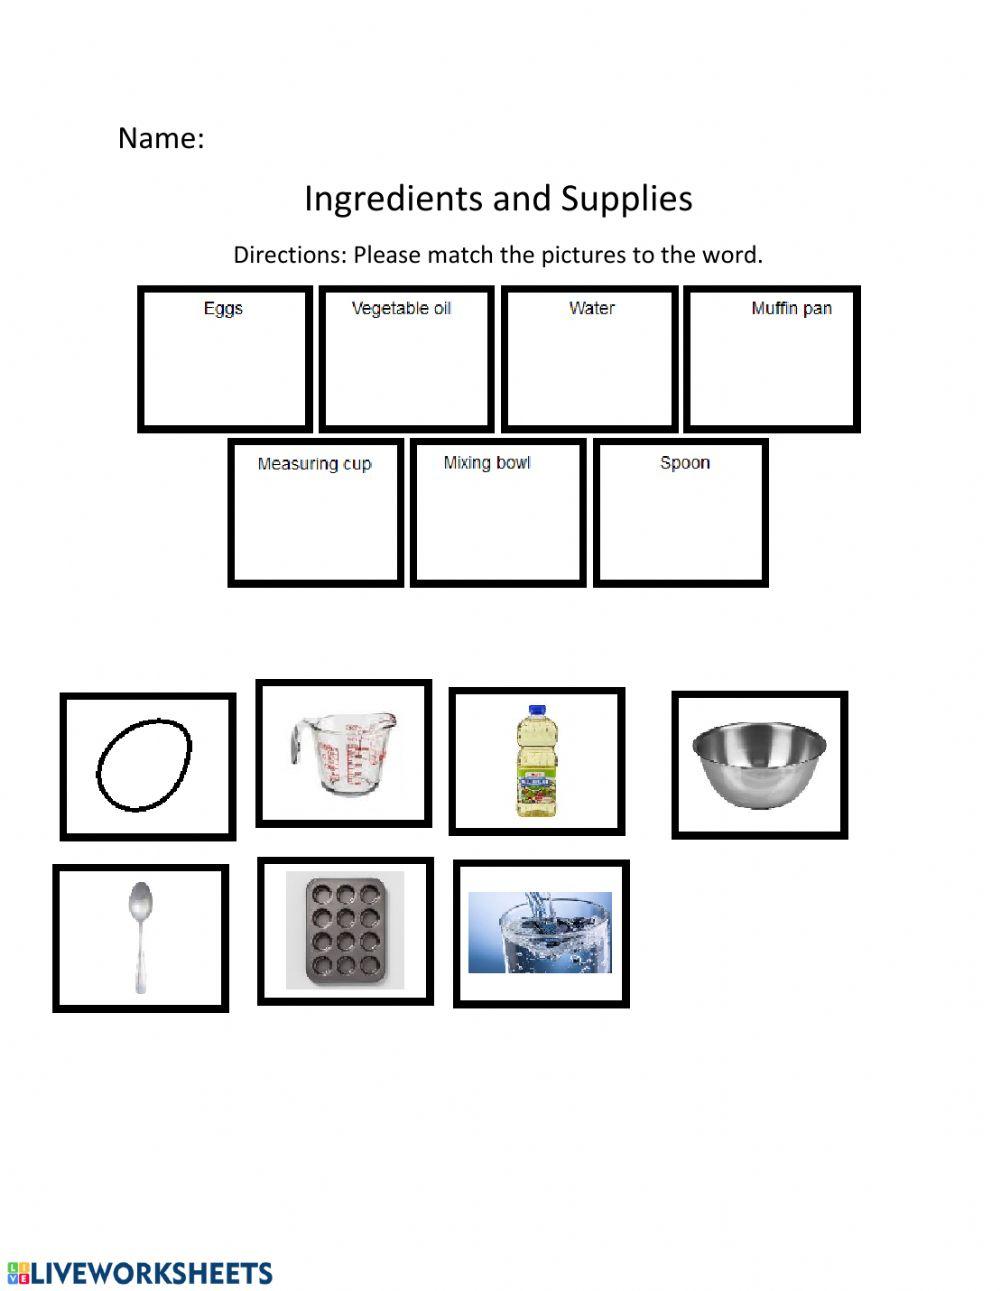 Muffins Ingredients-Supplies